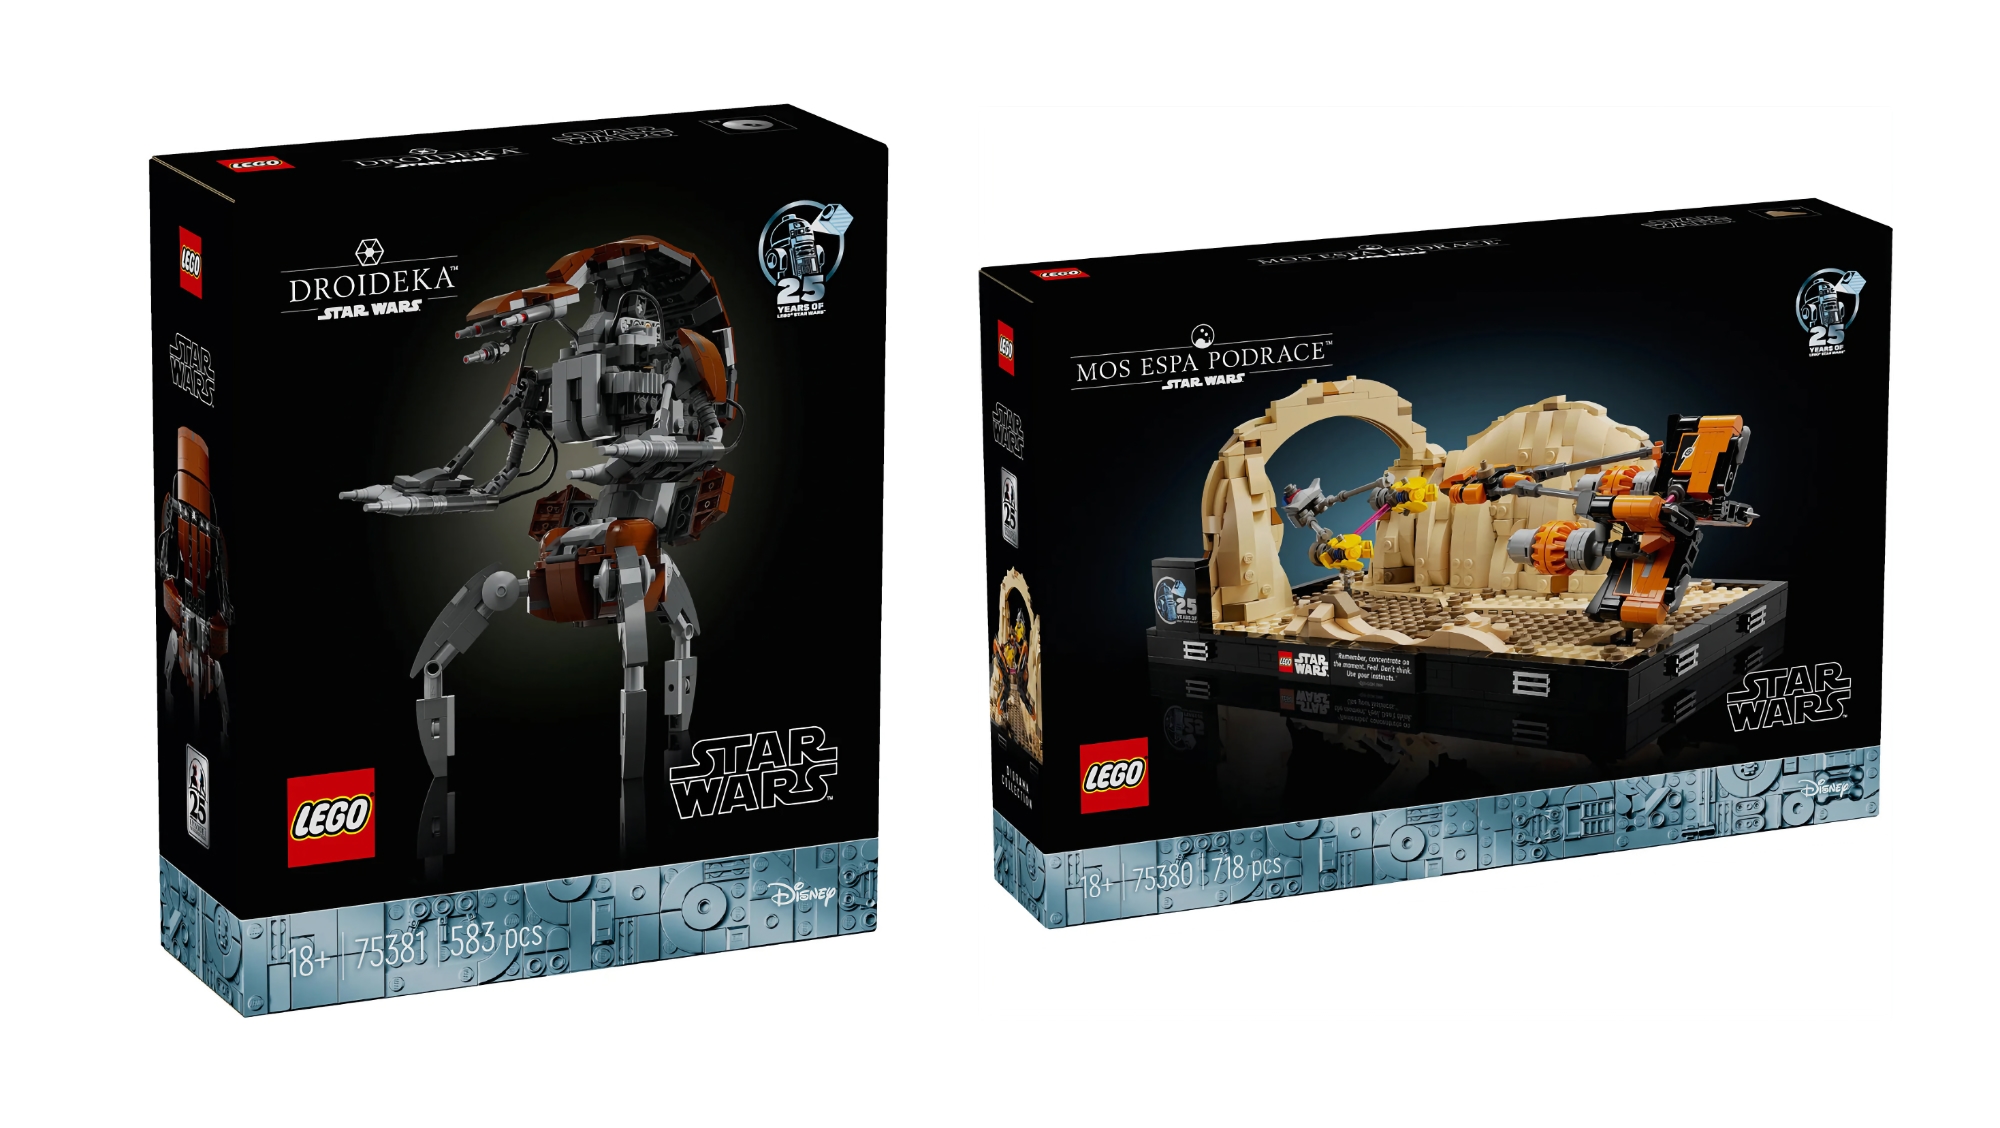 Mos espa Podrace і Droideka: LEGO у травні випустить два нові набори для фанатів Star Wars